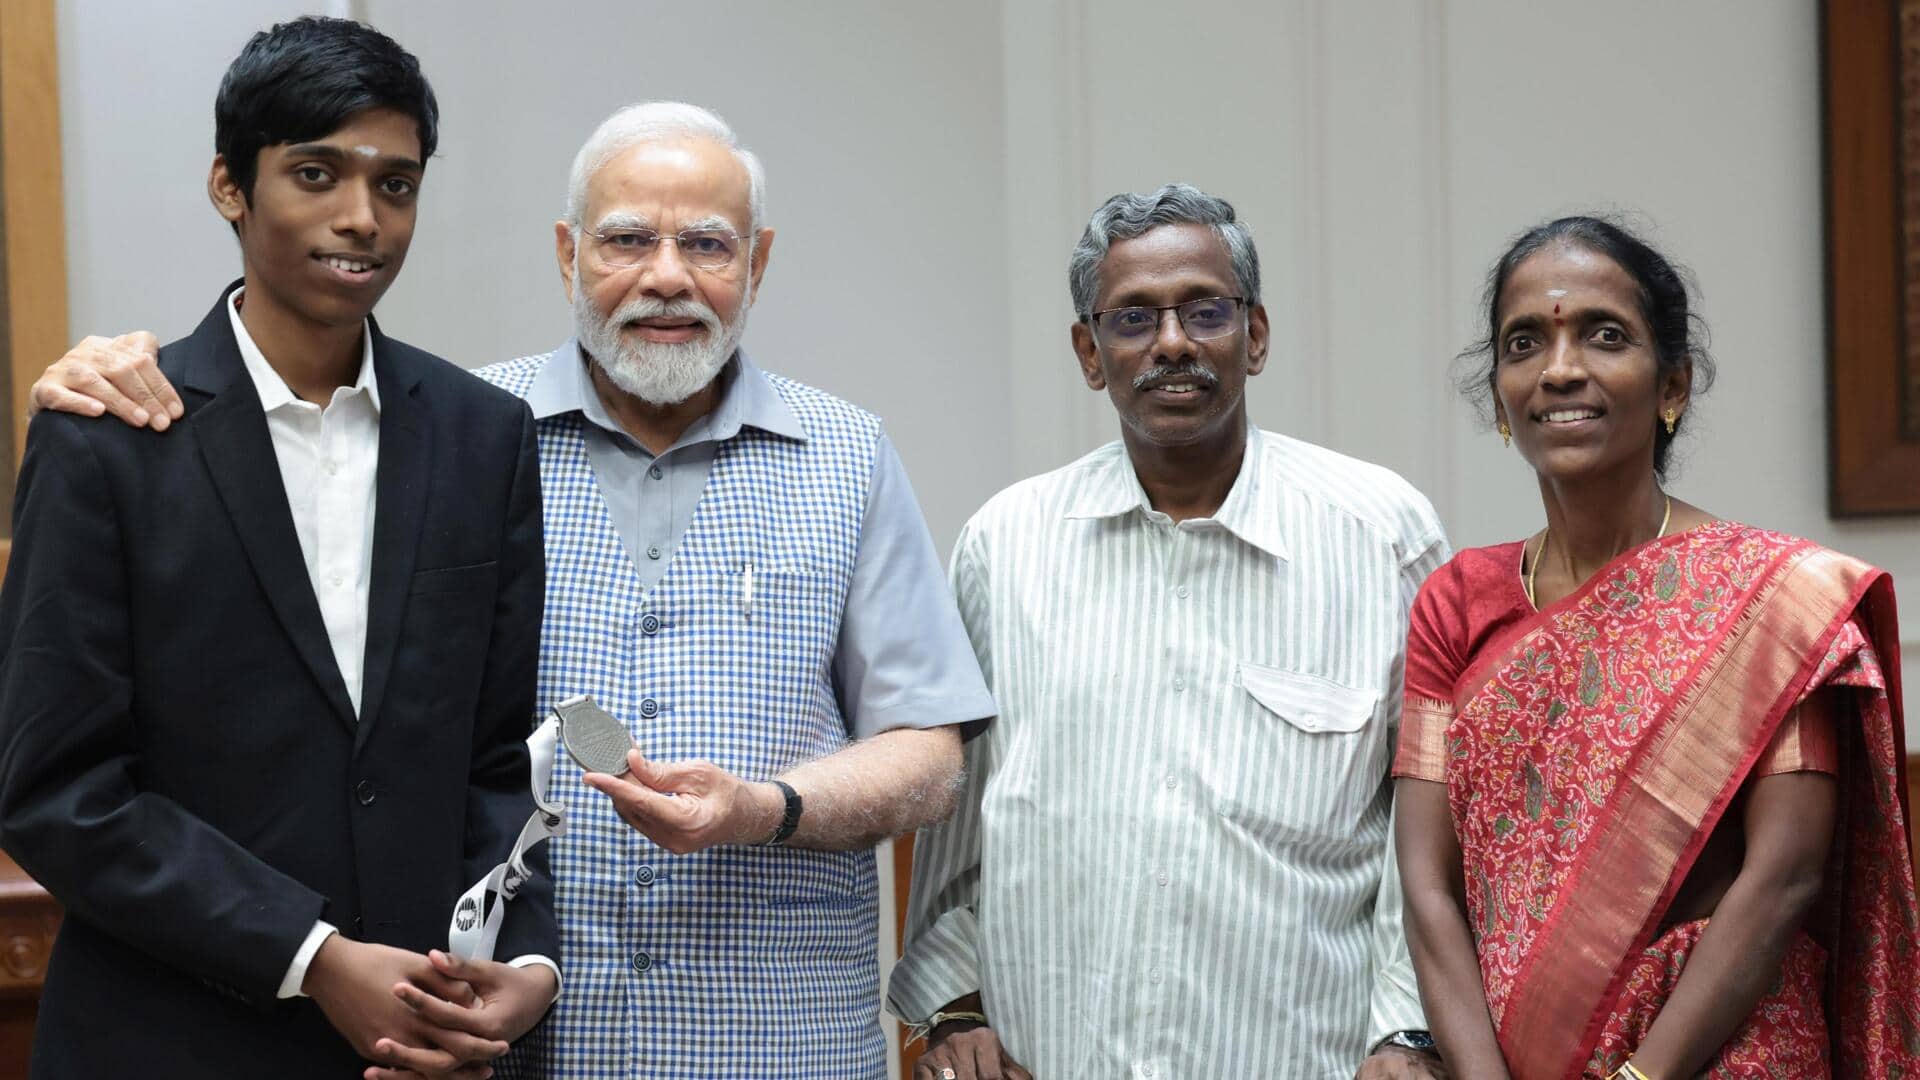 प्रधानमंत्री नरेंद्र मोदी ने प्रगनाननंदा और उनके परिवार से की मुलाकात, देखिए तस्वीरें